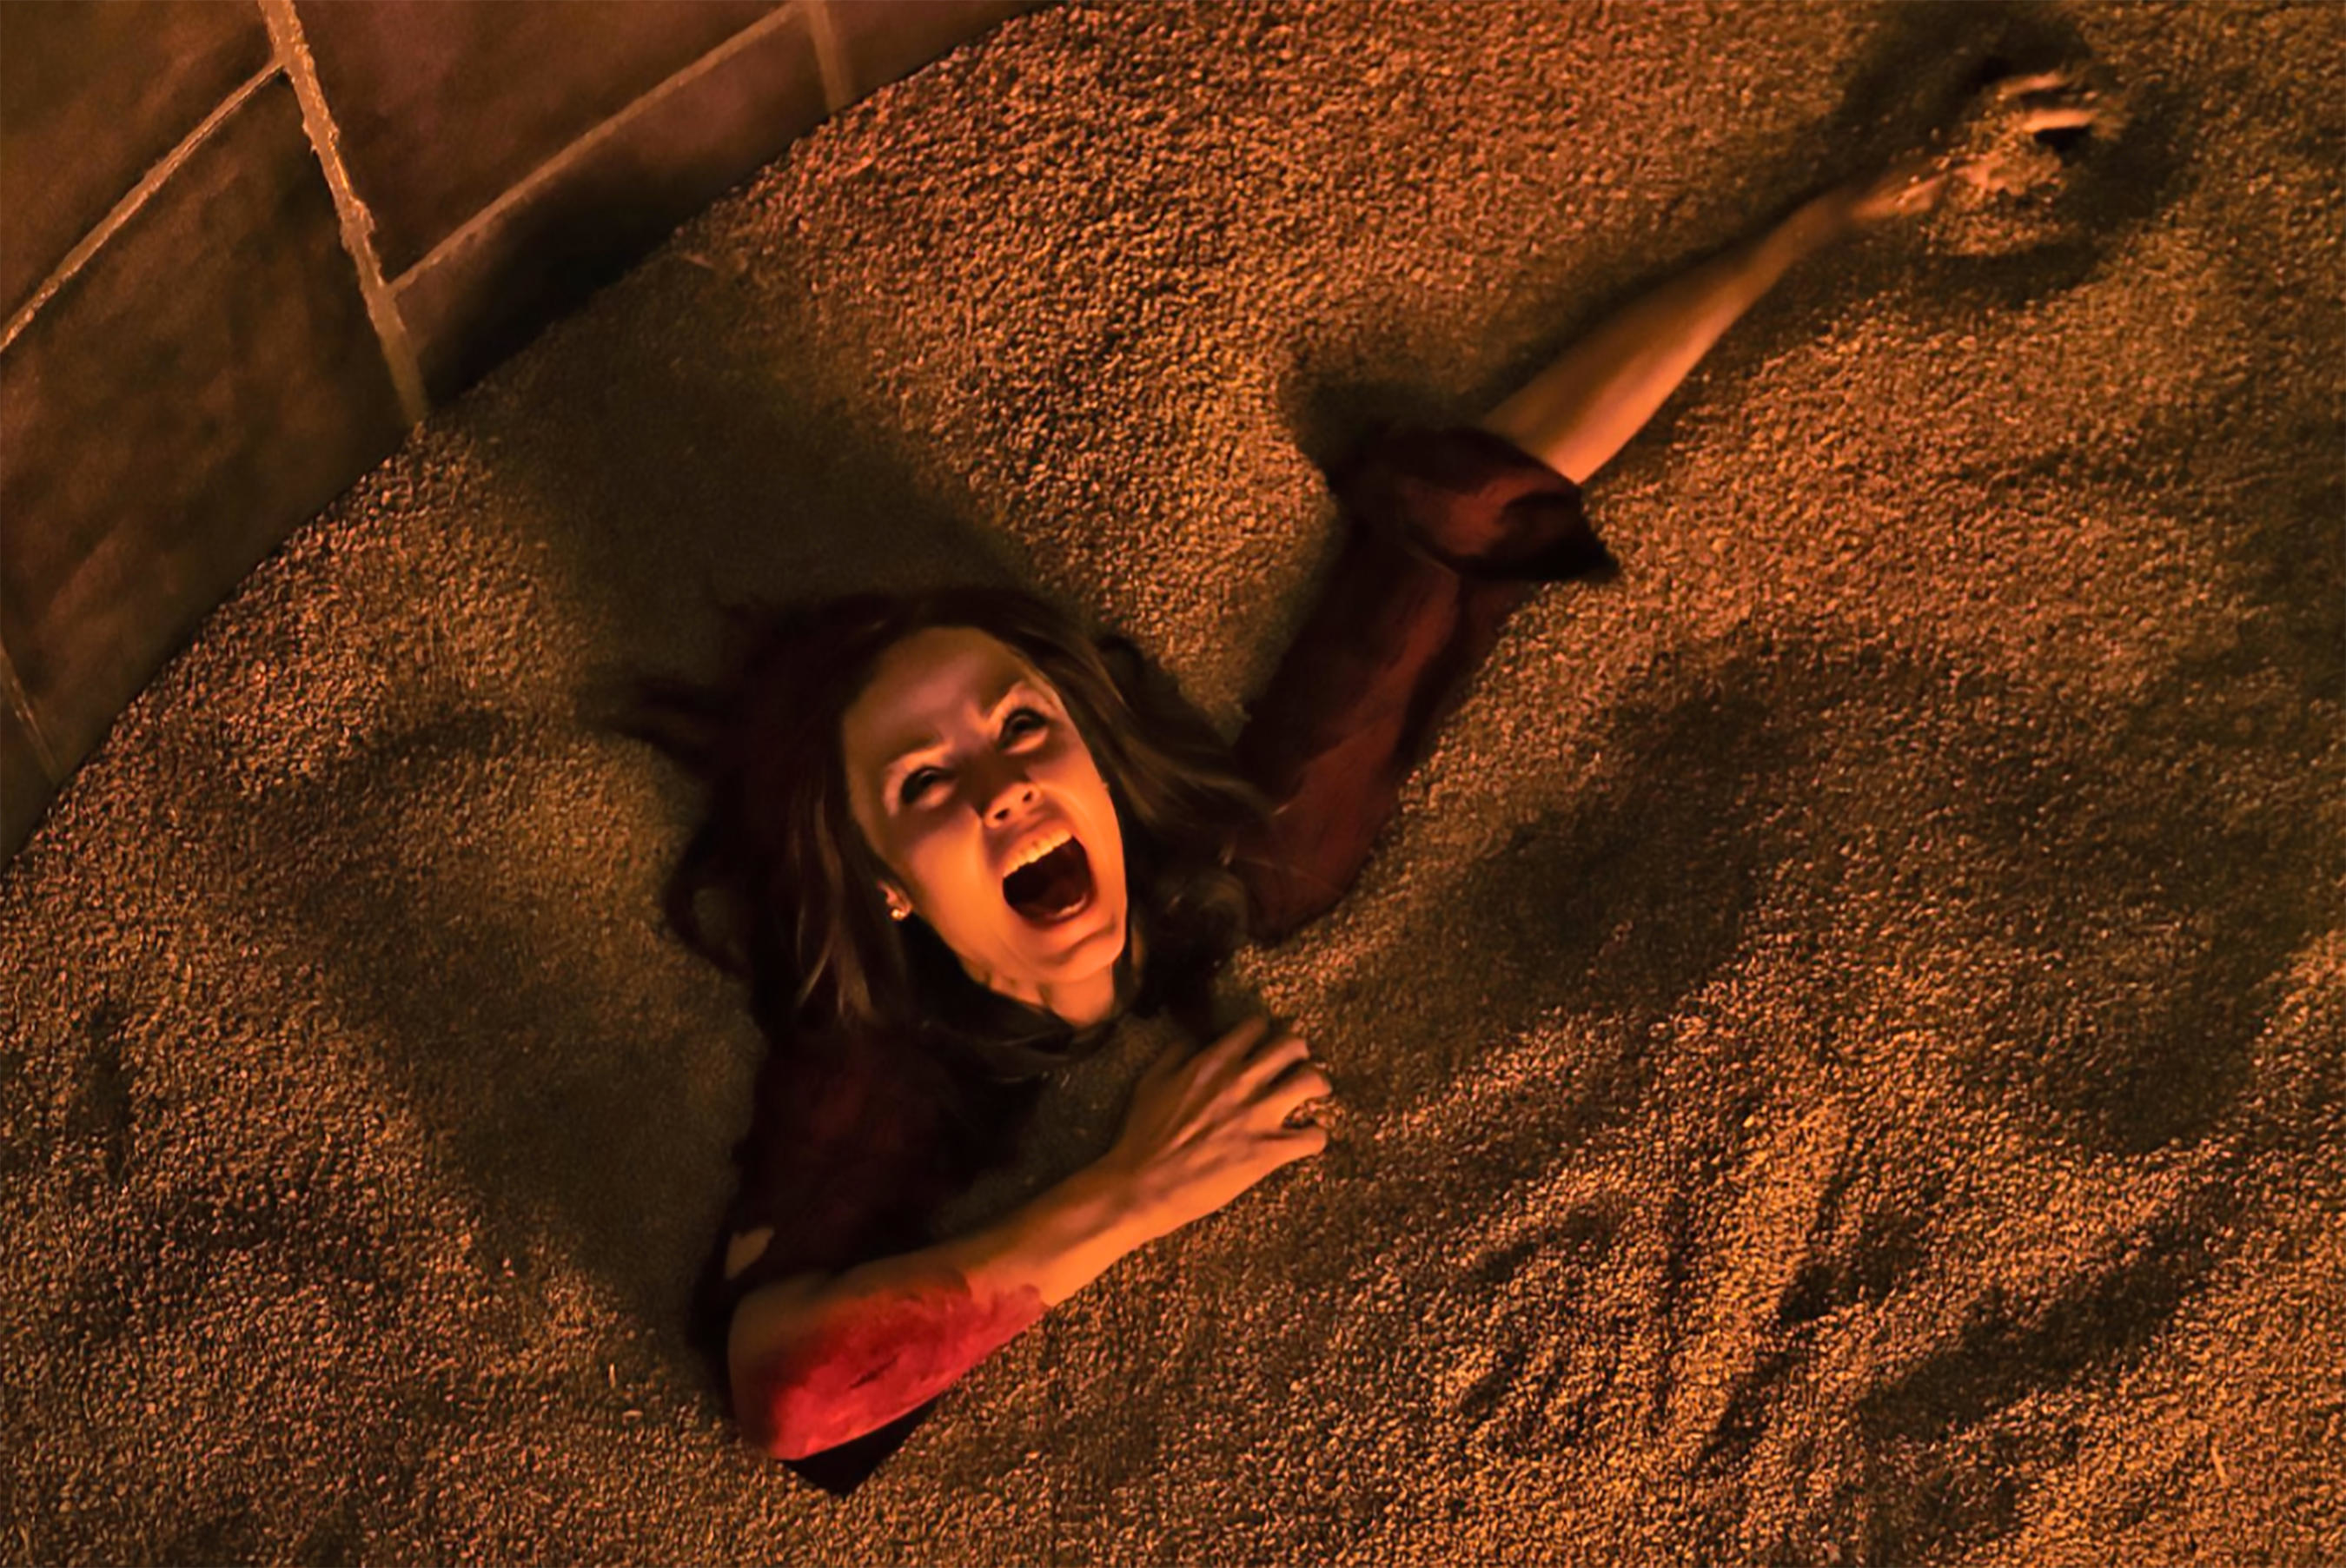 Laura Vandervoort screams while stuck in a grain silo